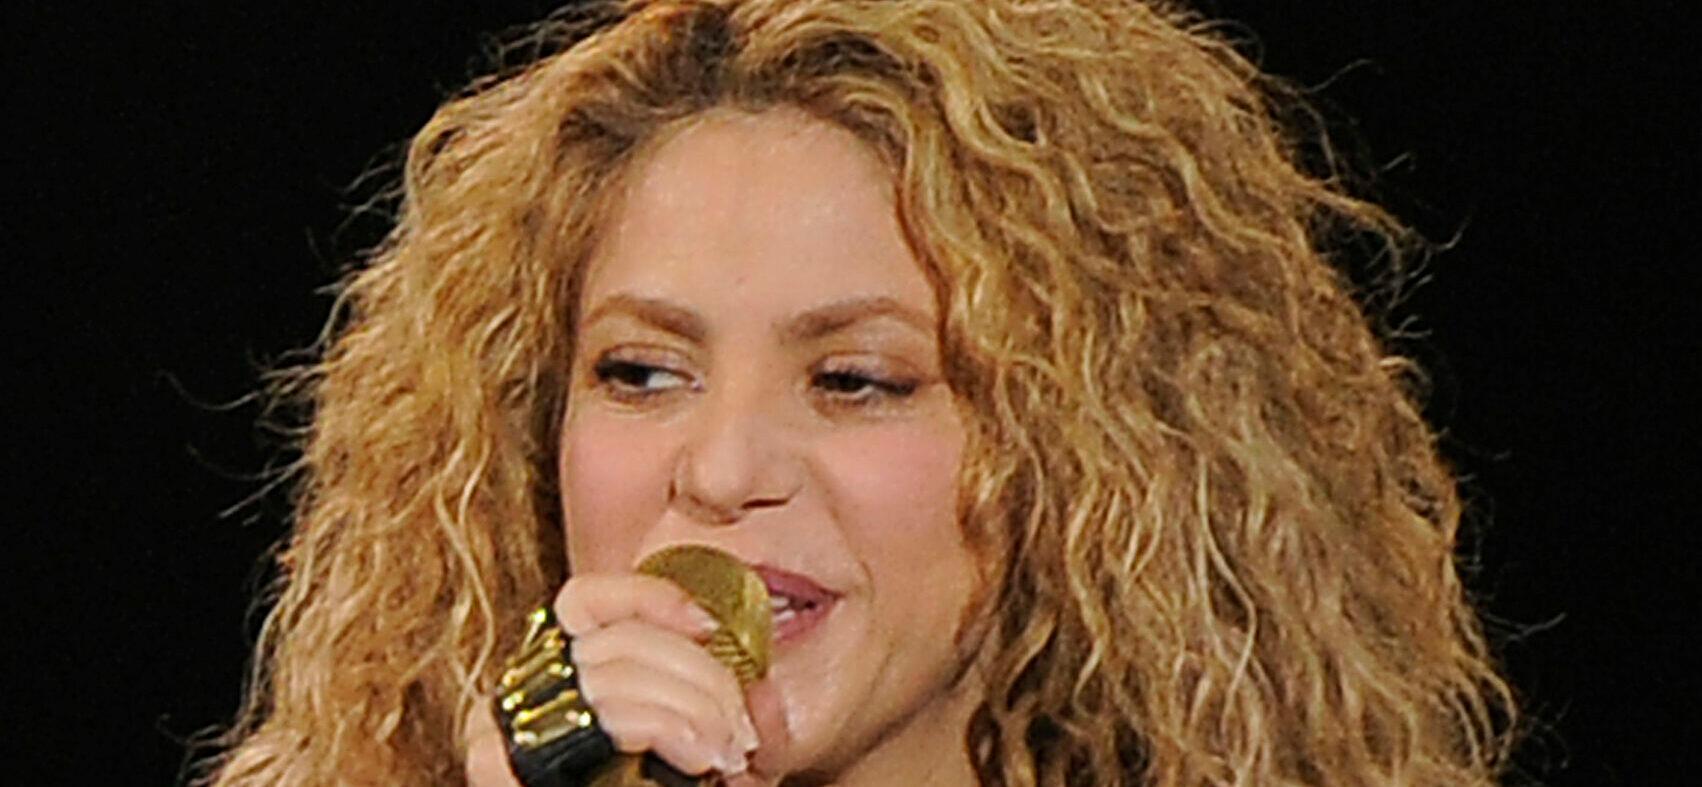 Shakira performing at the O2 Arena